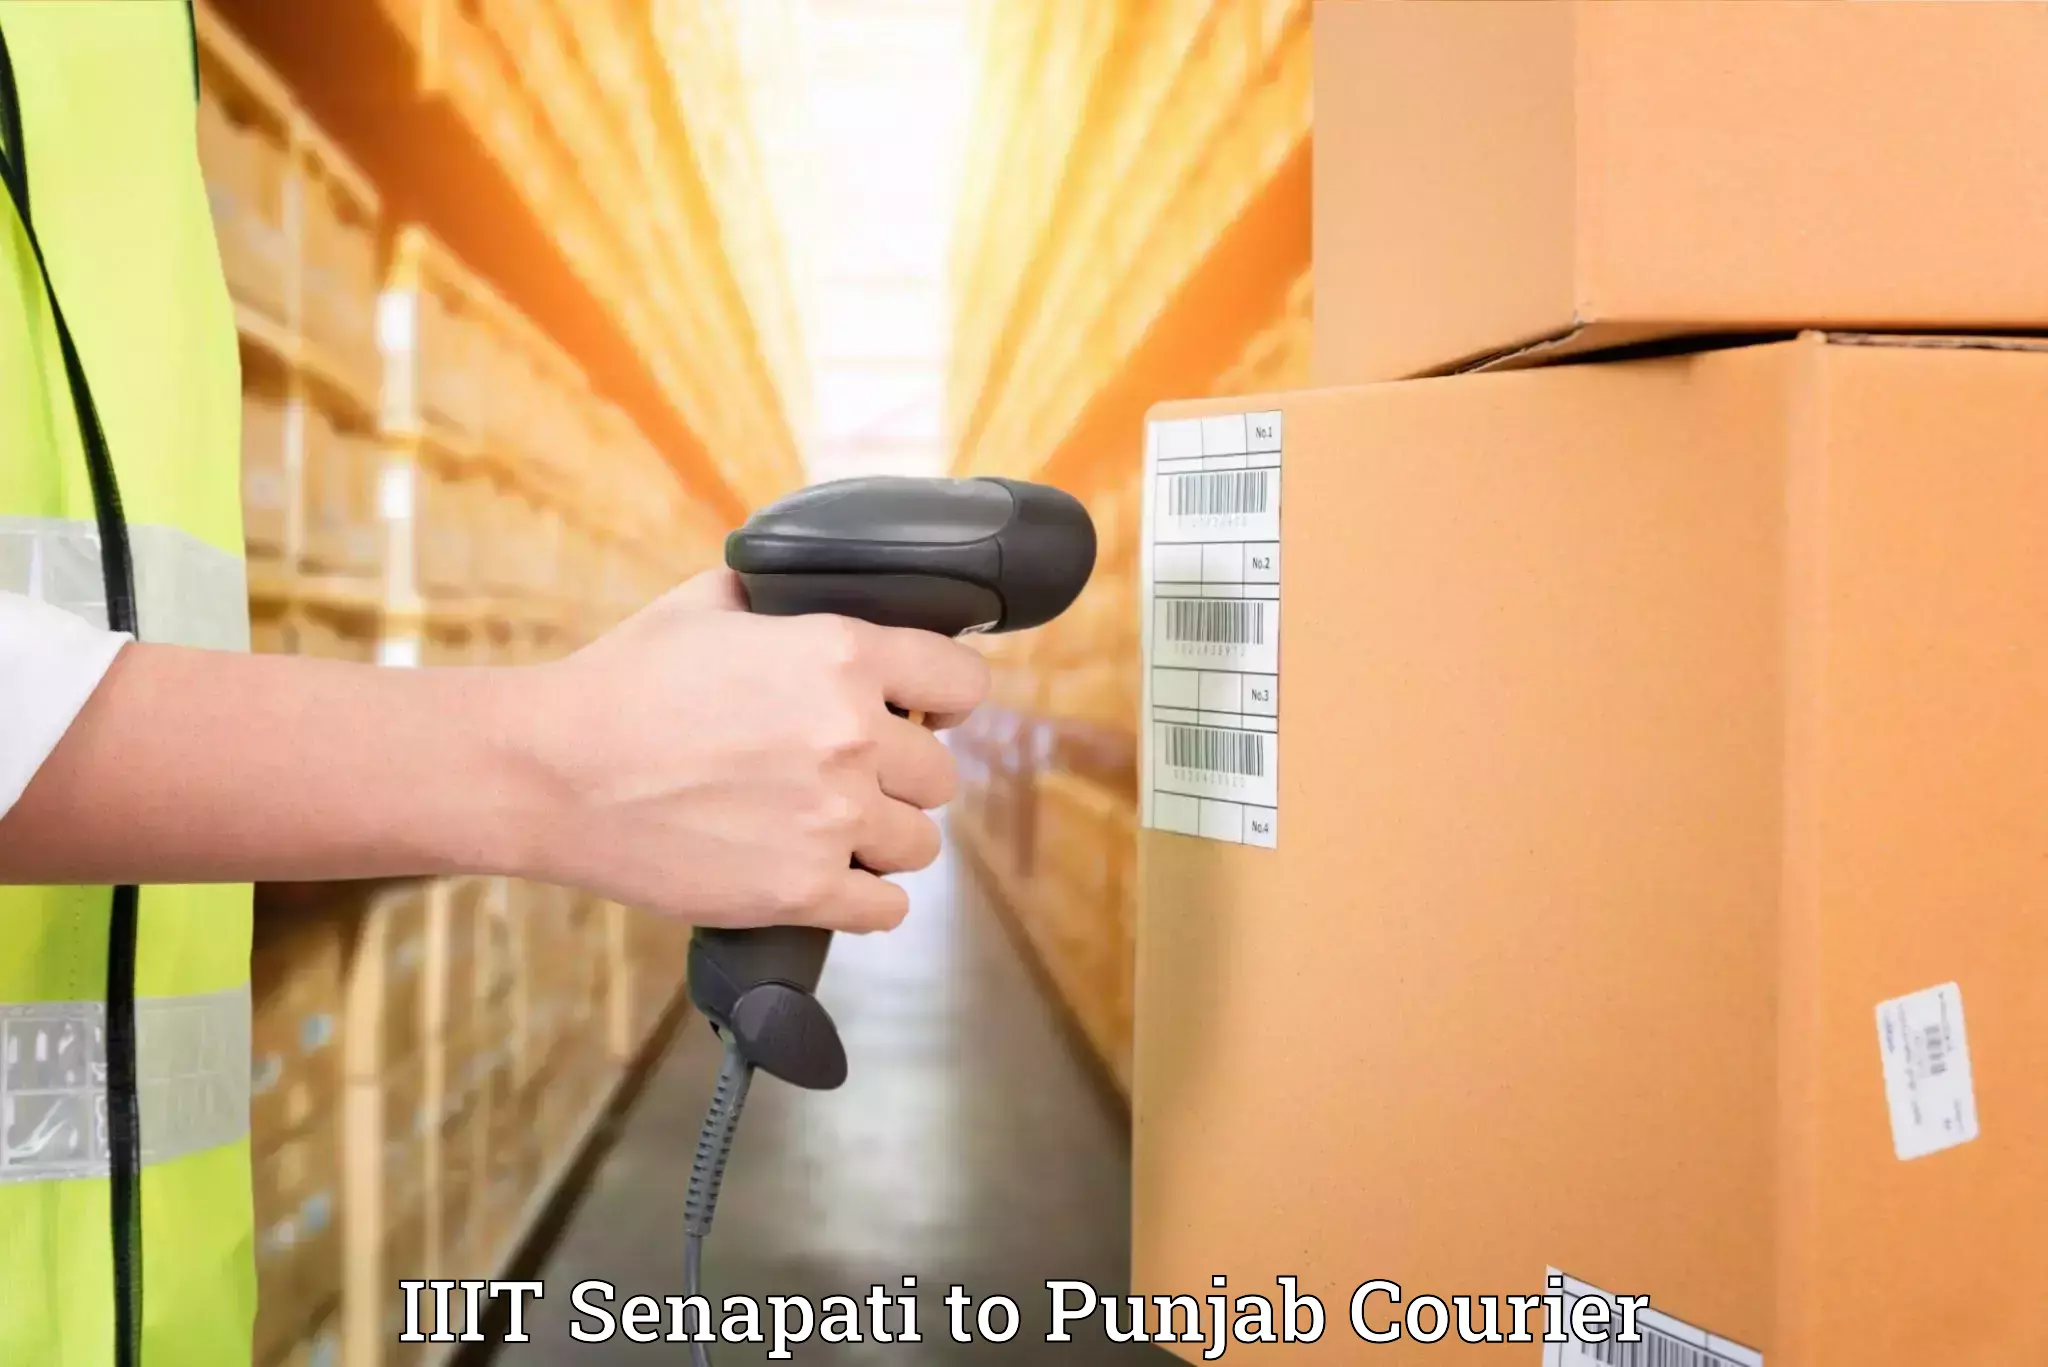 Moving and storage services IIIT Senapati to Dinanagar